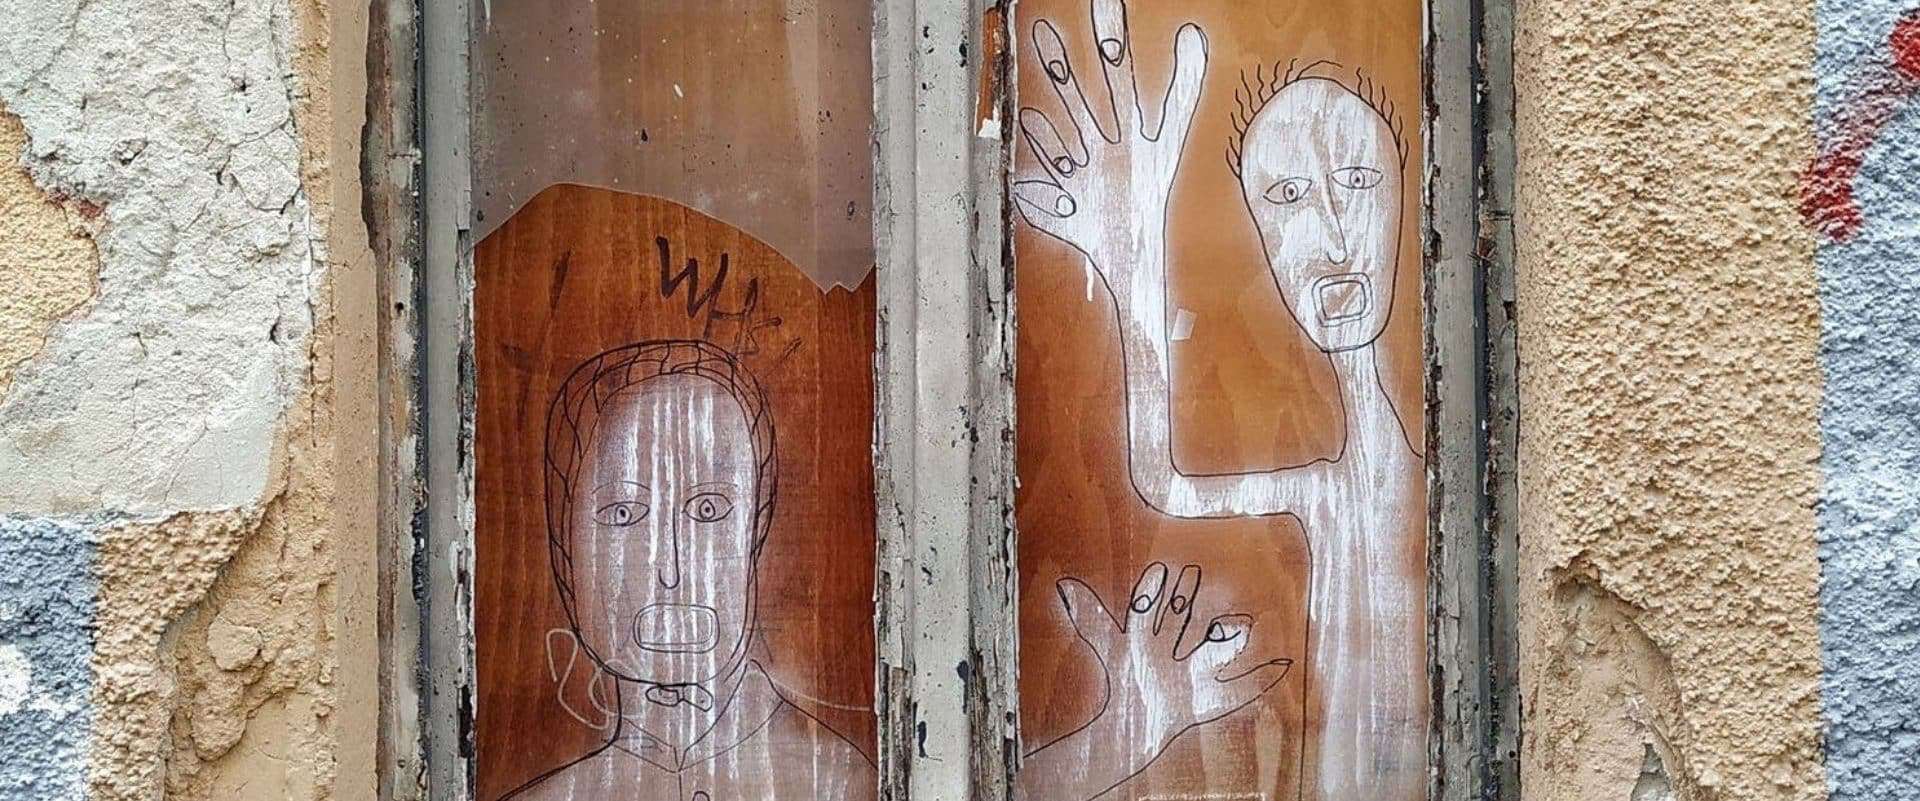 Deux personnages dessinées en graffiti sur une planche de bois dans une fenêtre d'une maison ayant besoin d'entretien.